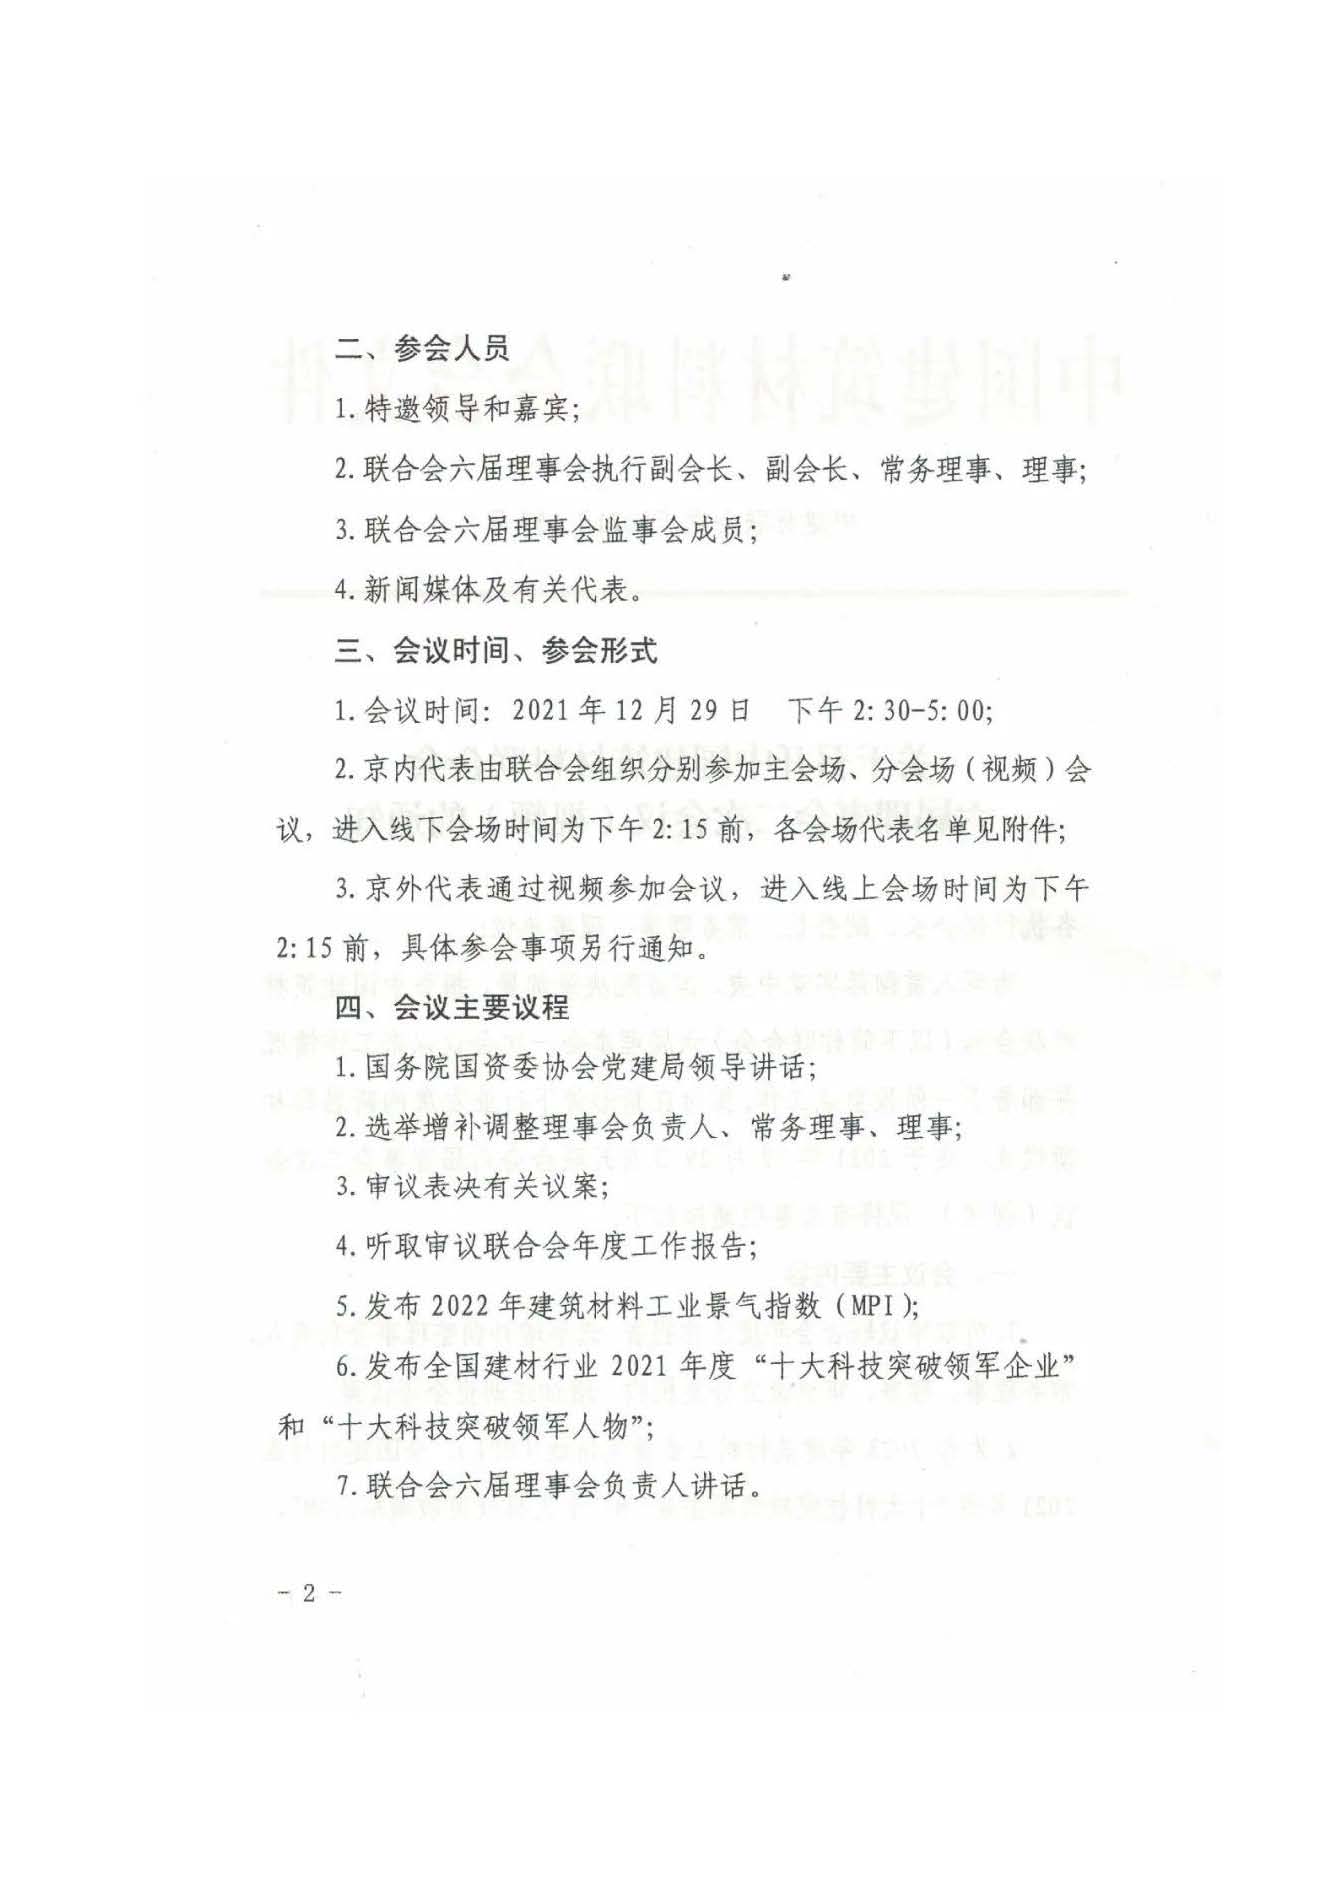 高德1970注册
中国建筑材料联合会六届理事会二次会议（视频）即将召开